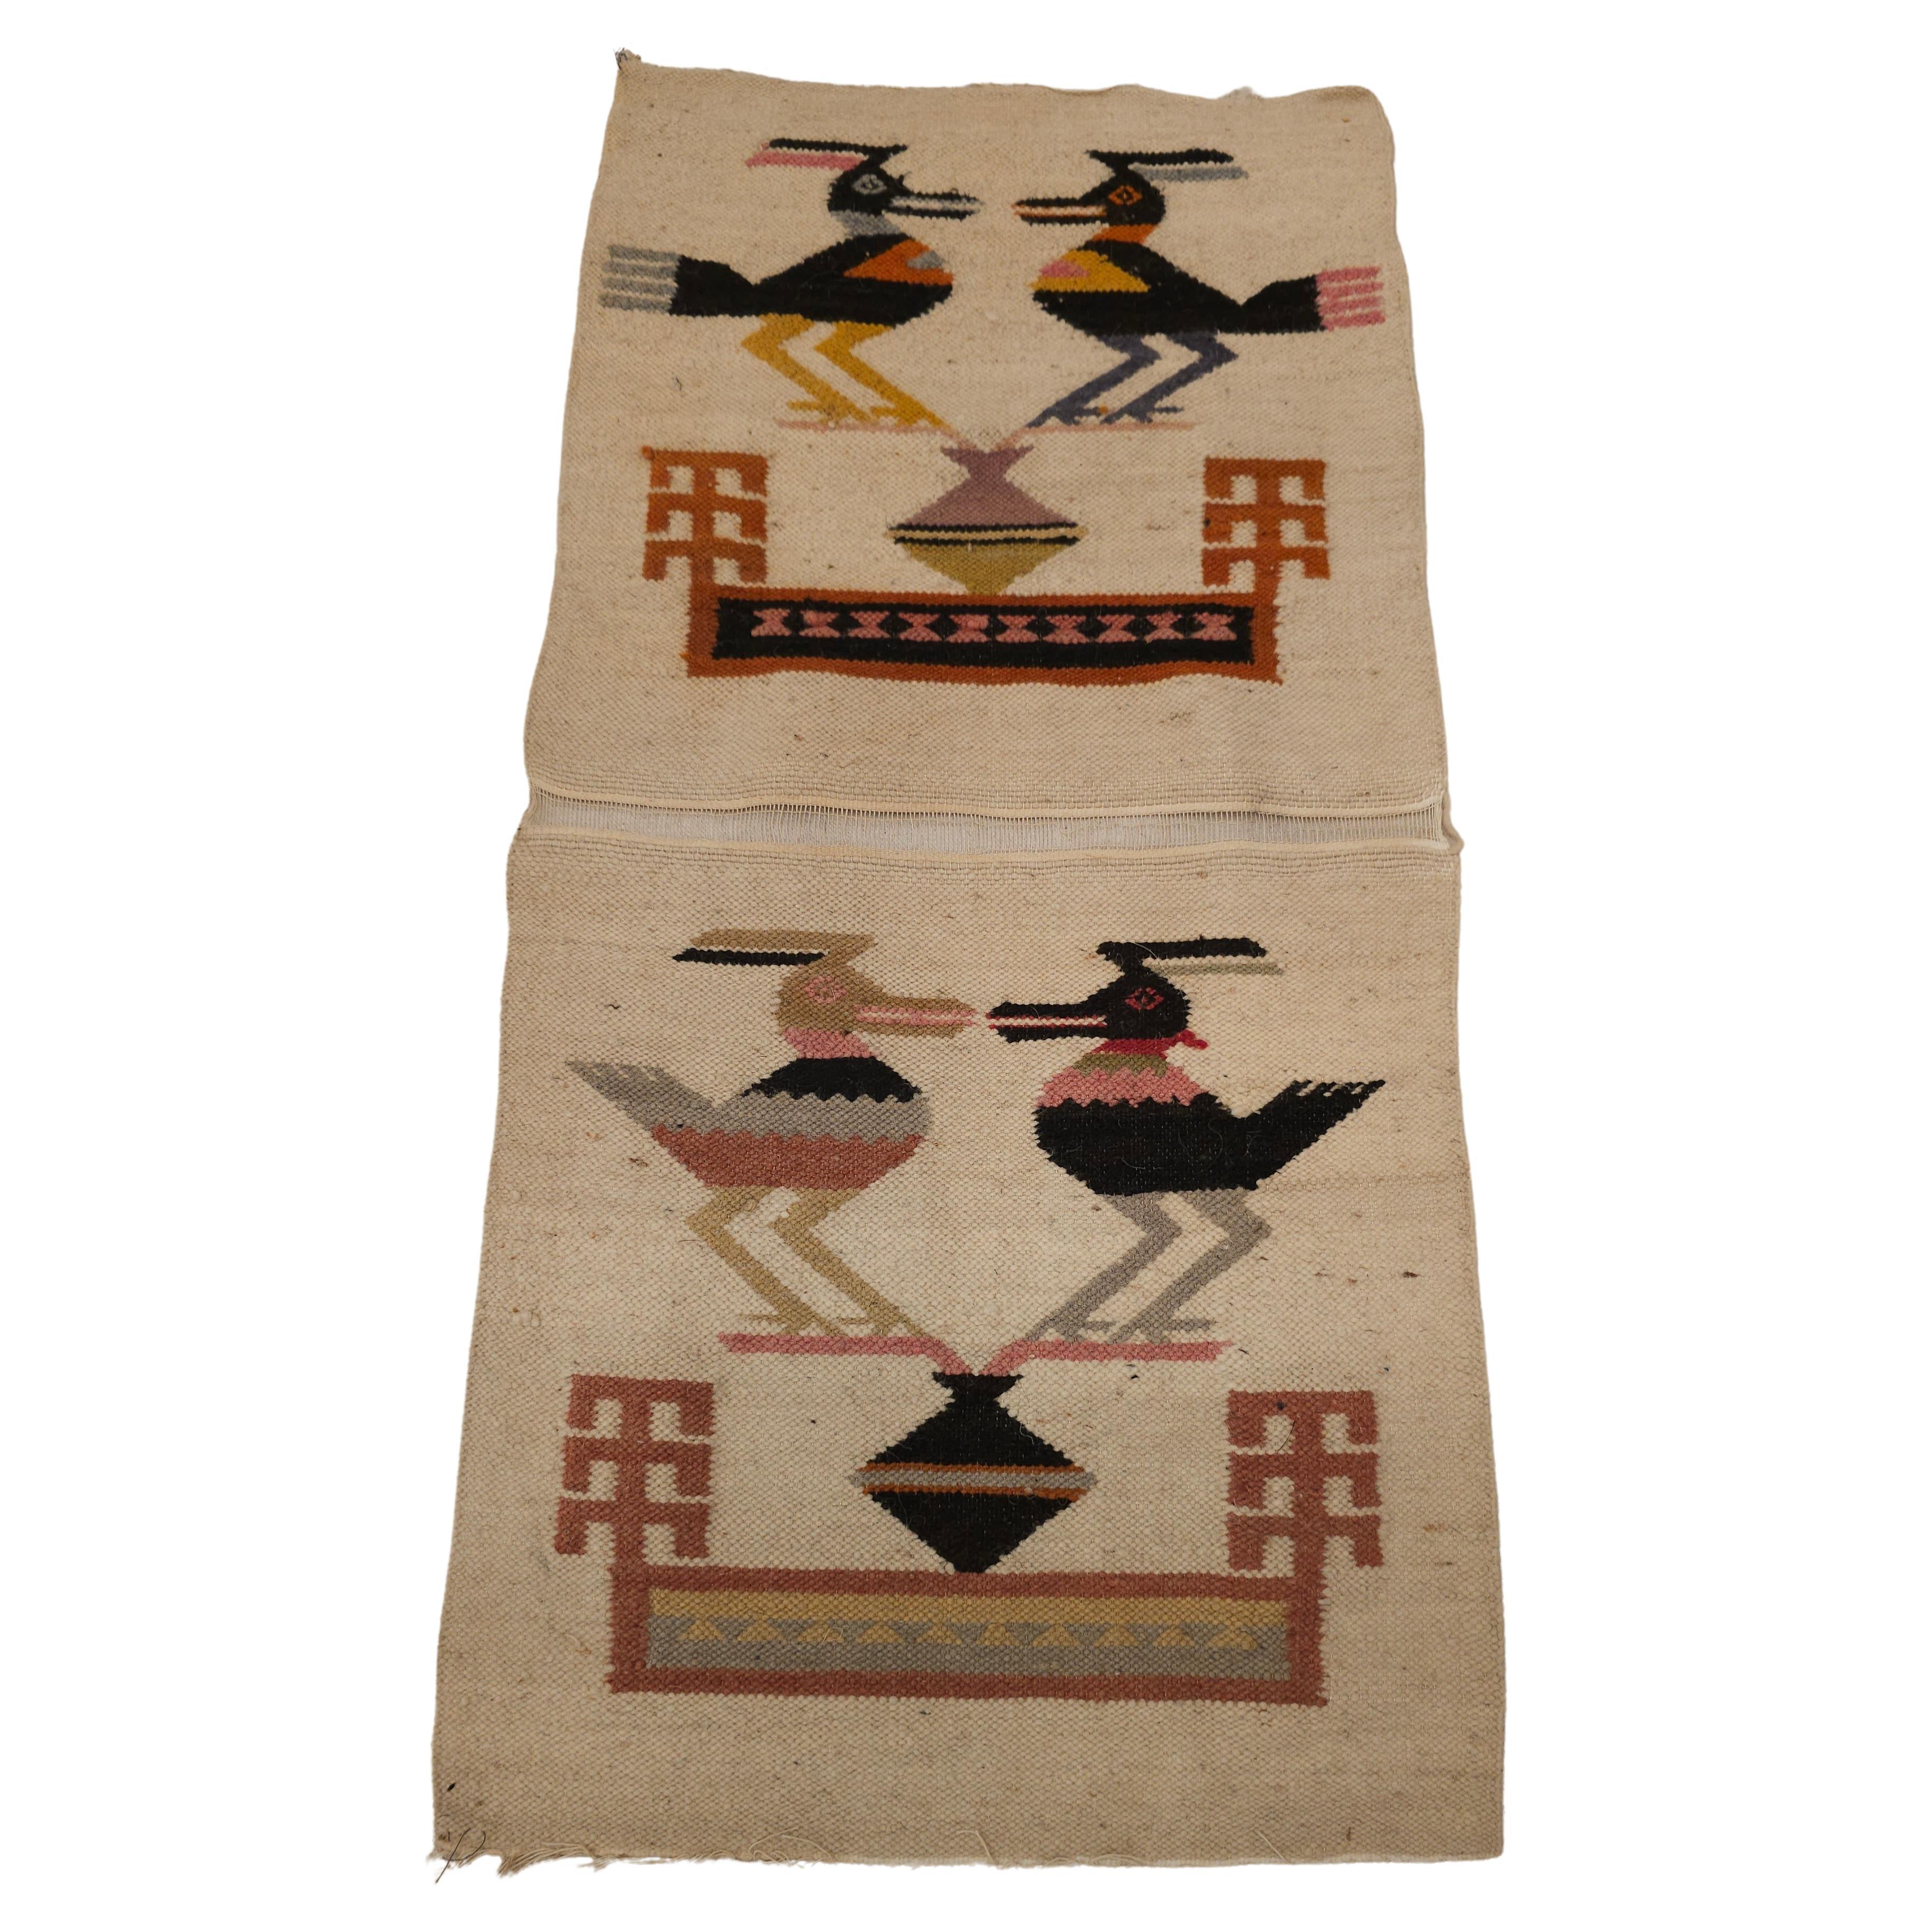 Vintage Native American Navajo Bildteppich mit den Vögeln Design handgewebt in der SW Vereinigten Staaten in der Mitte der 1900er Jahre. Da die Vögel fliegen können und sich zwischen Erde und Himmel befinden, haben sie in der Kultur der